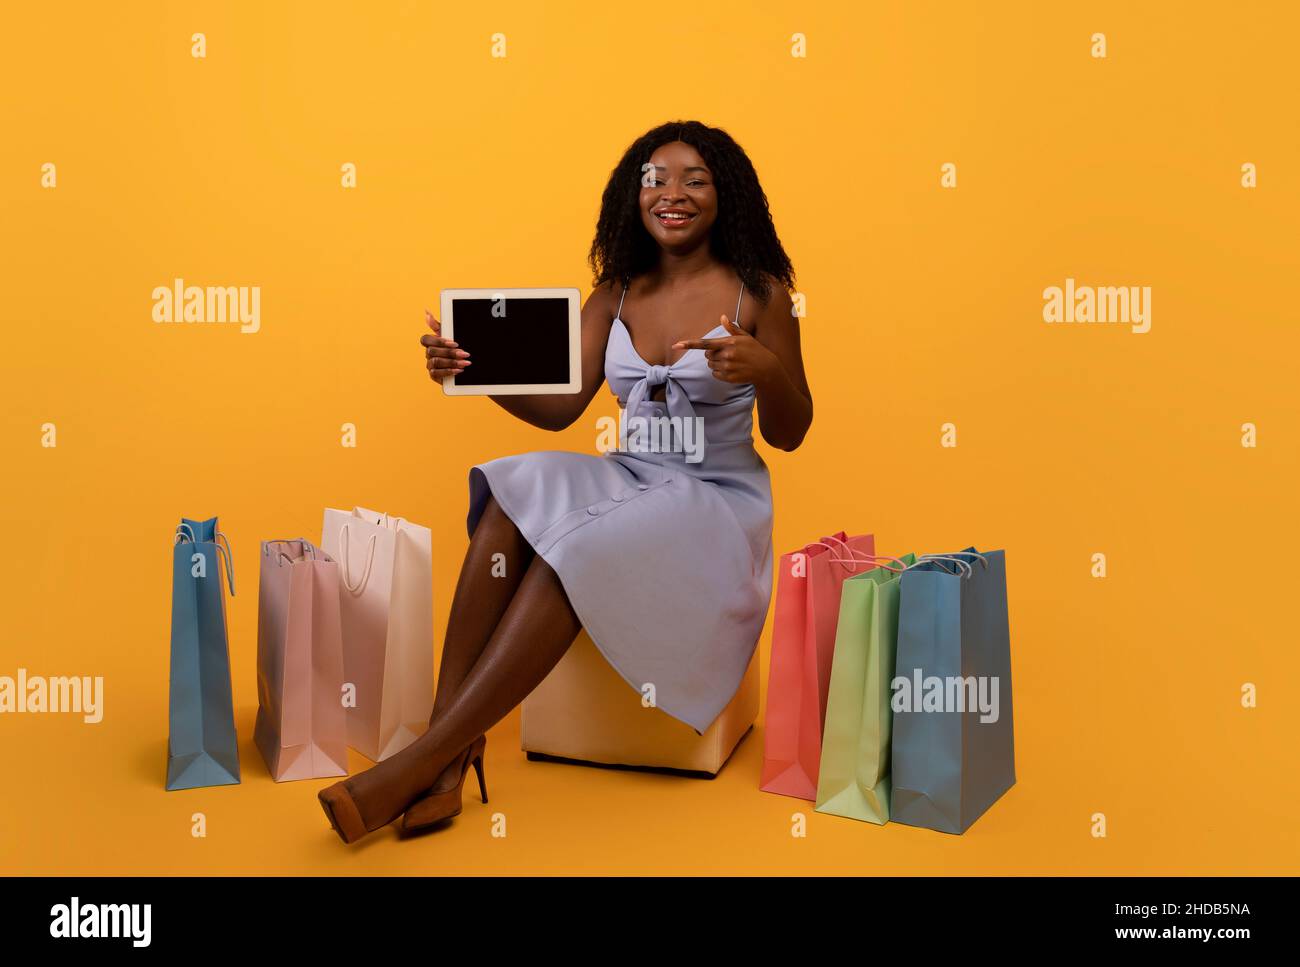 Femme noire millénaire montrant une tablette numérique avec écran vide, offrant une maquette pour une nouvelle application ou un nouveau site Web, des achats en ligne Banque D'Images